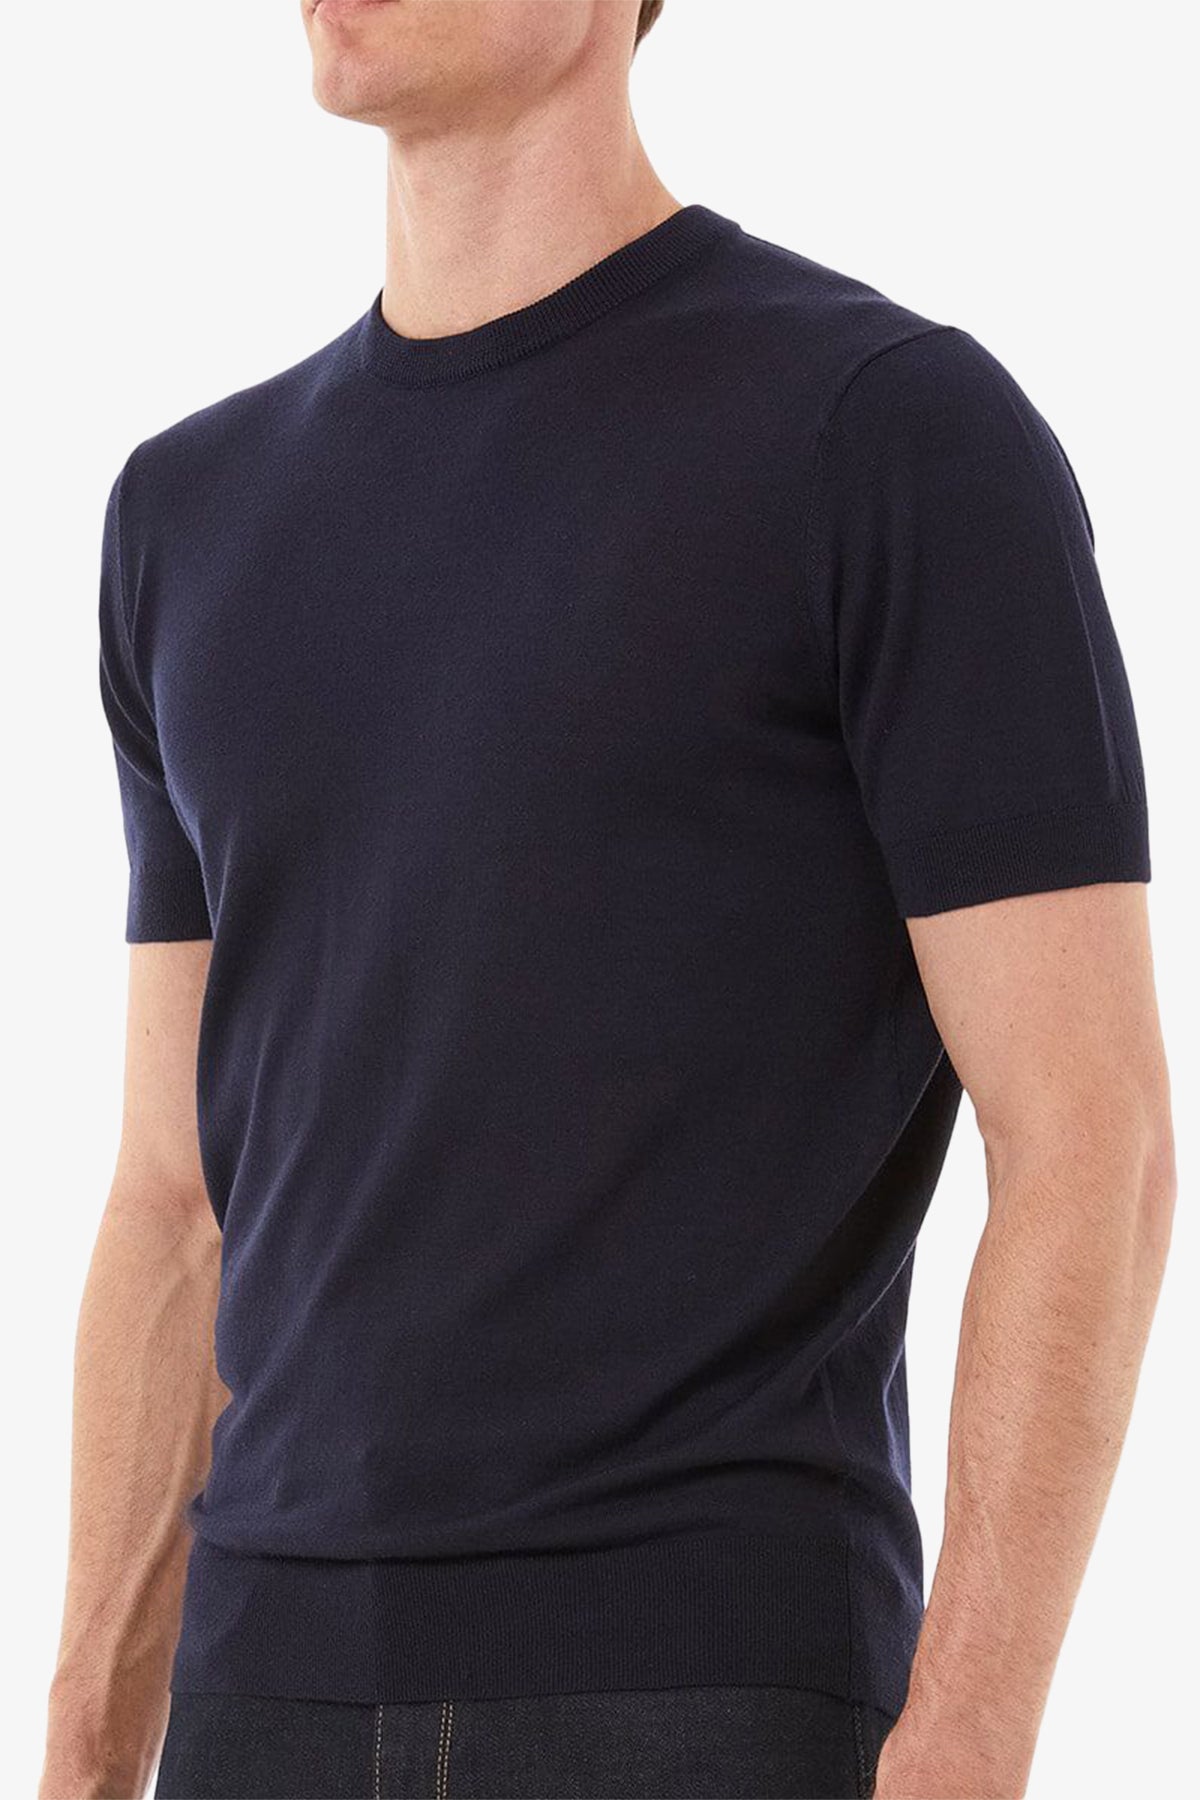 Amari - Navy Knitted T-shirt